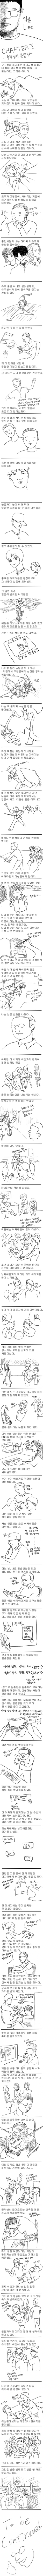 카연갤) 억울 Lee - 2부 중학생의 못생김 -.jpg